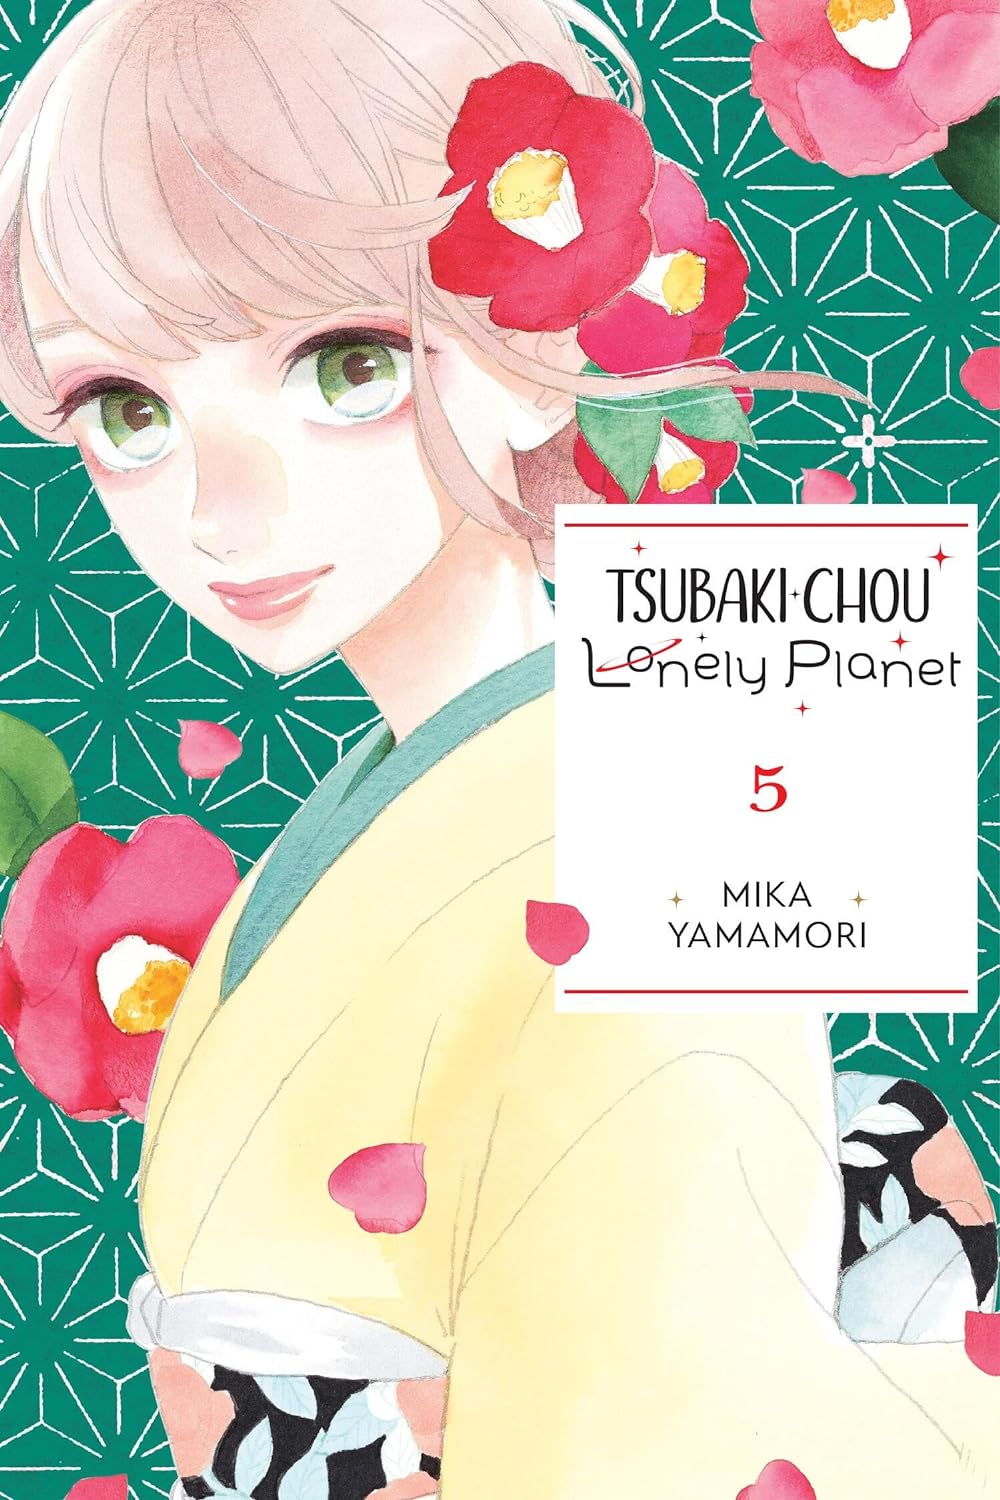 Tsubaki-Chou Lonely Planet Vol. 05